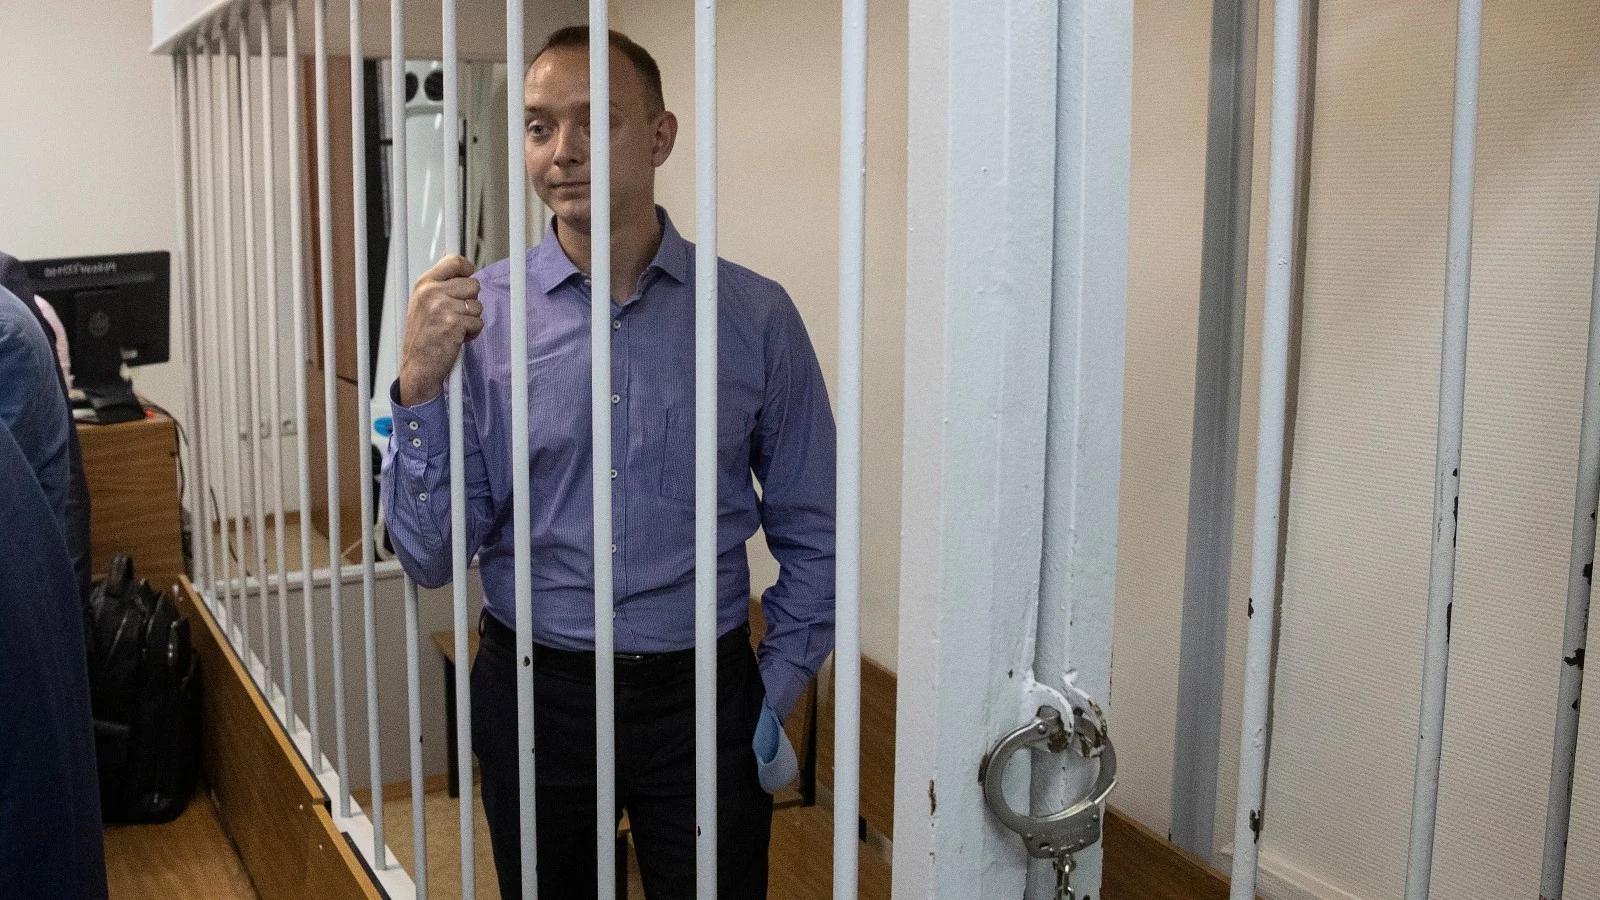 Rosyjski dziennikarz podejrzany o zdradę stanu. "Nie doczekamy się jawnego, otwartego procesu"